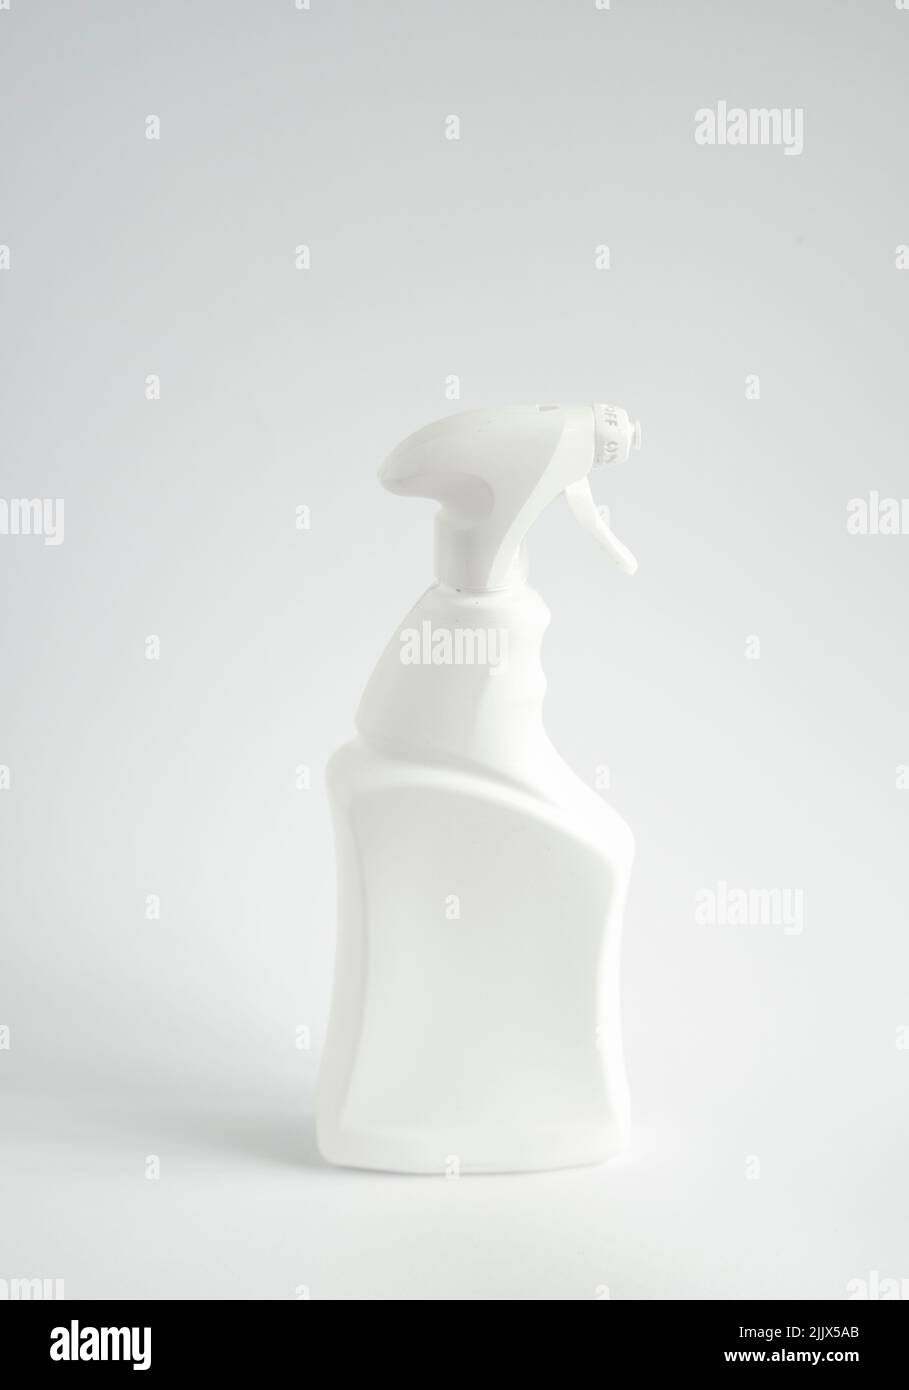 Flacon de détergent en aérosol blanc en plastique, isolé sur fond blanc. Maquette de modèle d'emballage. Banque D'Images